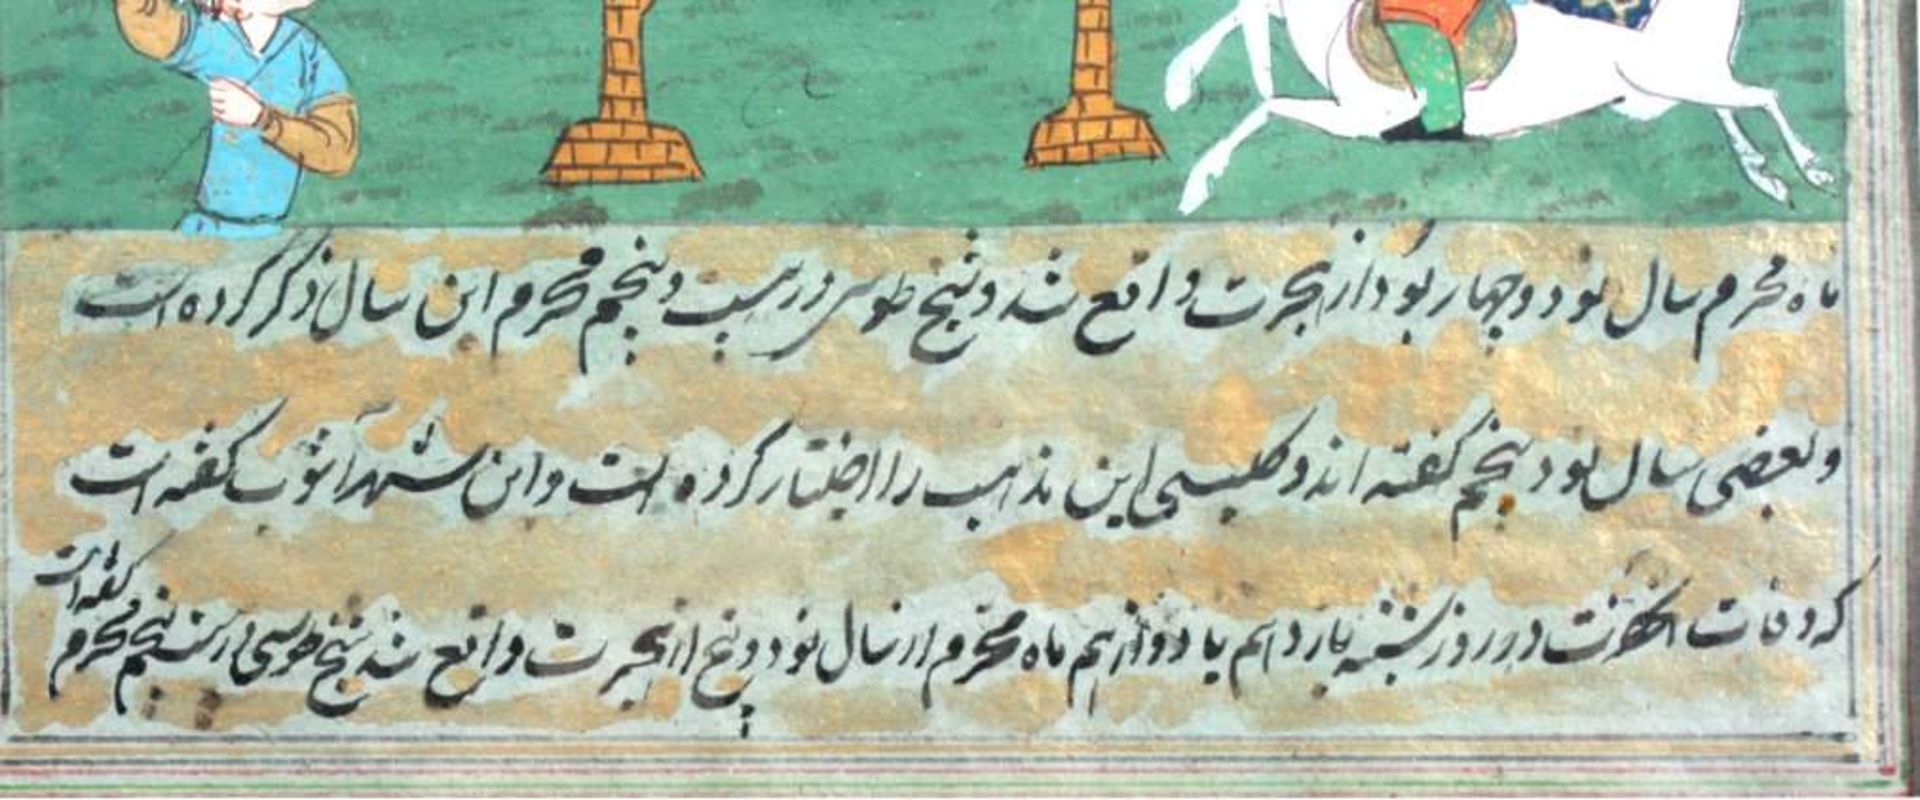 Miniaturmalerei aus Isfahan Anfang 20. Jh.mit Auszug einer Geschichte wohl aus dem Schahname( - Bild 3 aus 4